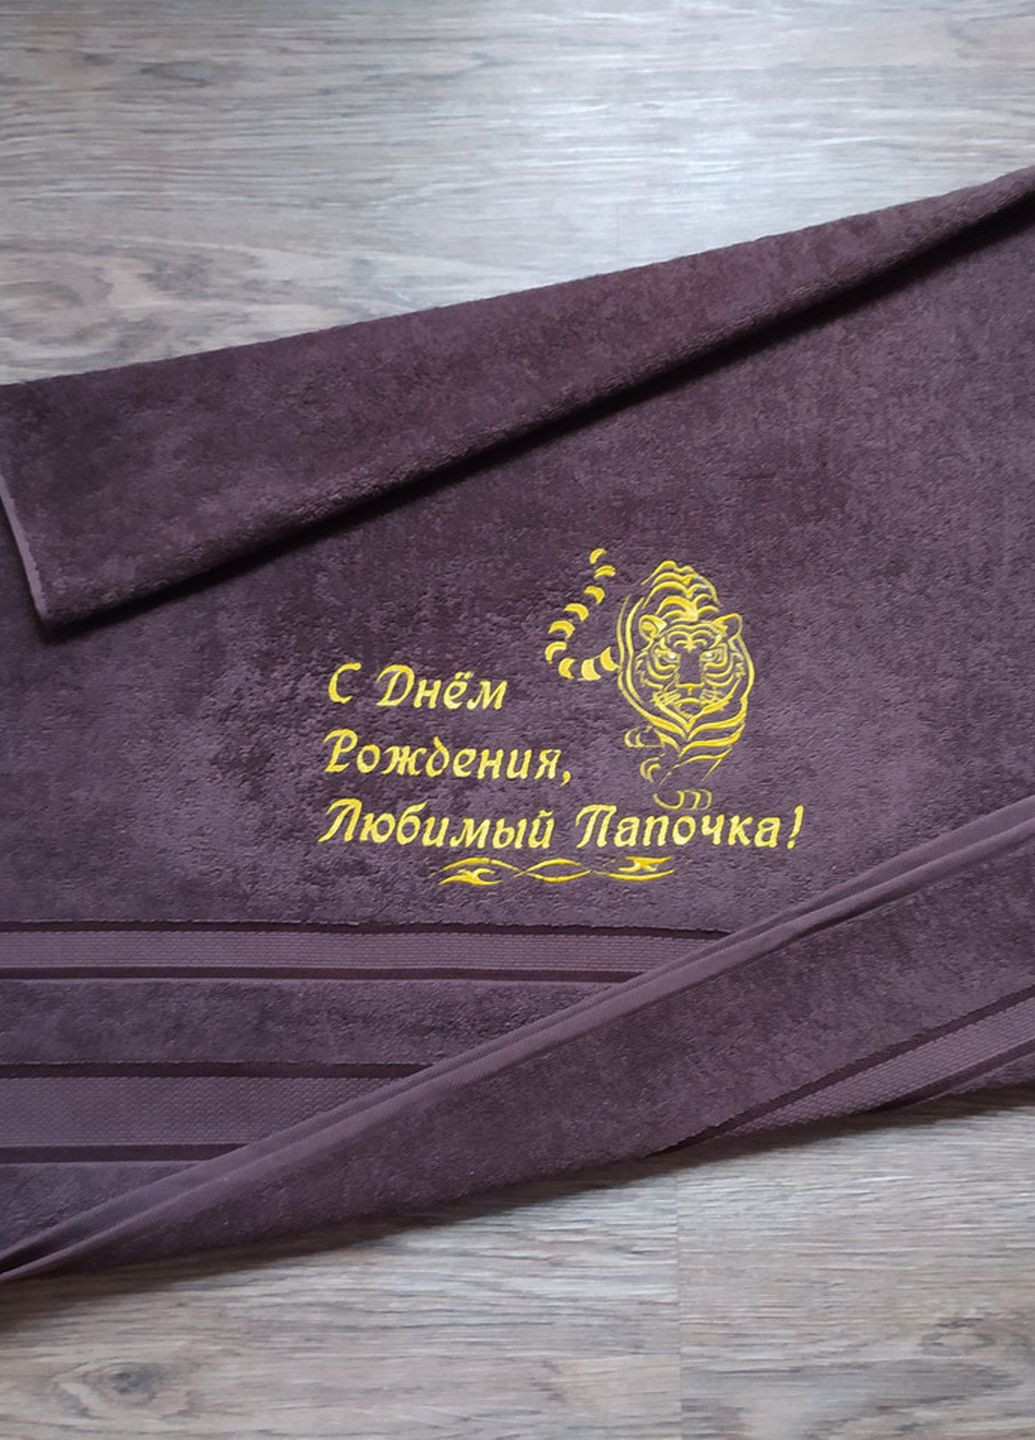 No Brand полотенце с вышивкой махровое банное 70*140 темно-коричневый папе 00160 однотонный темно-коричневый производство - Украина